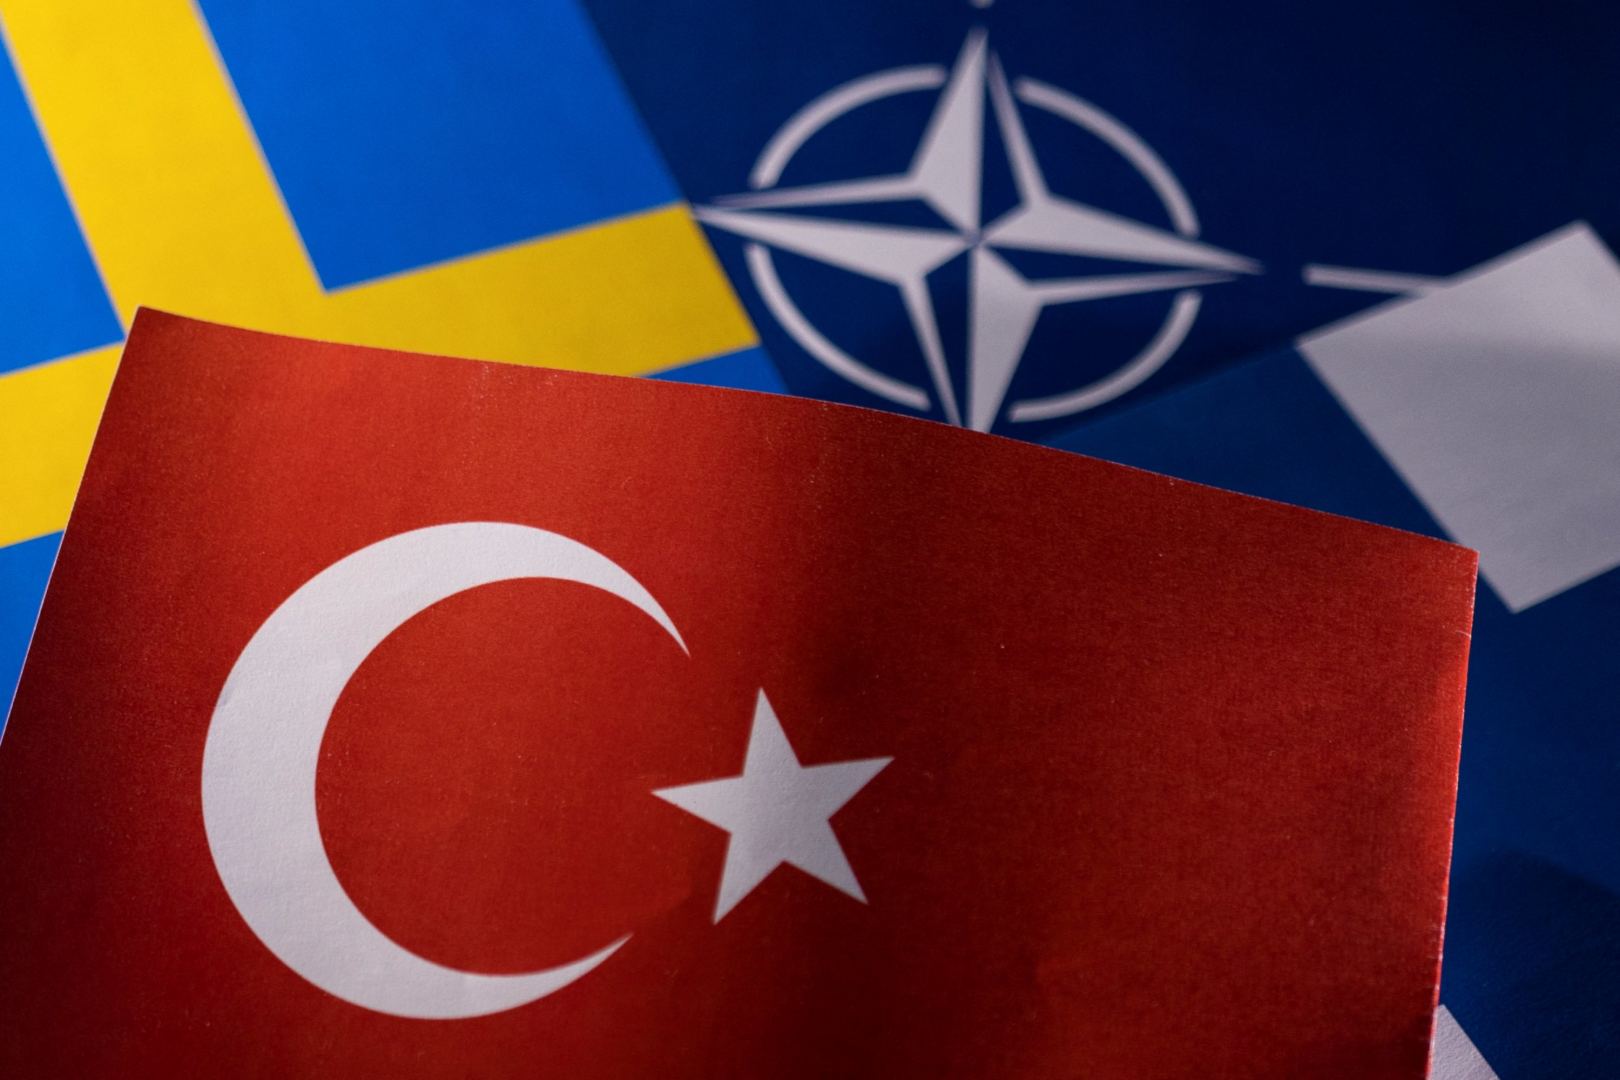 Türkiye, Sweden, Finland to hold trilateral mechanism meeting